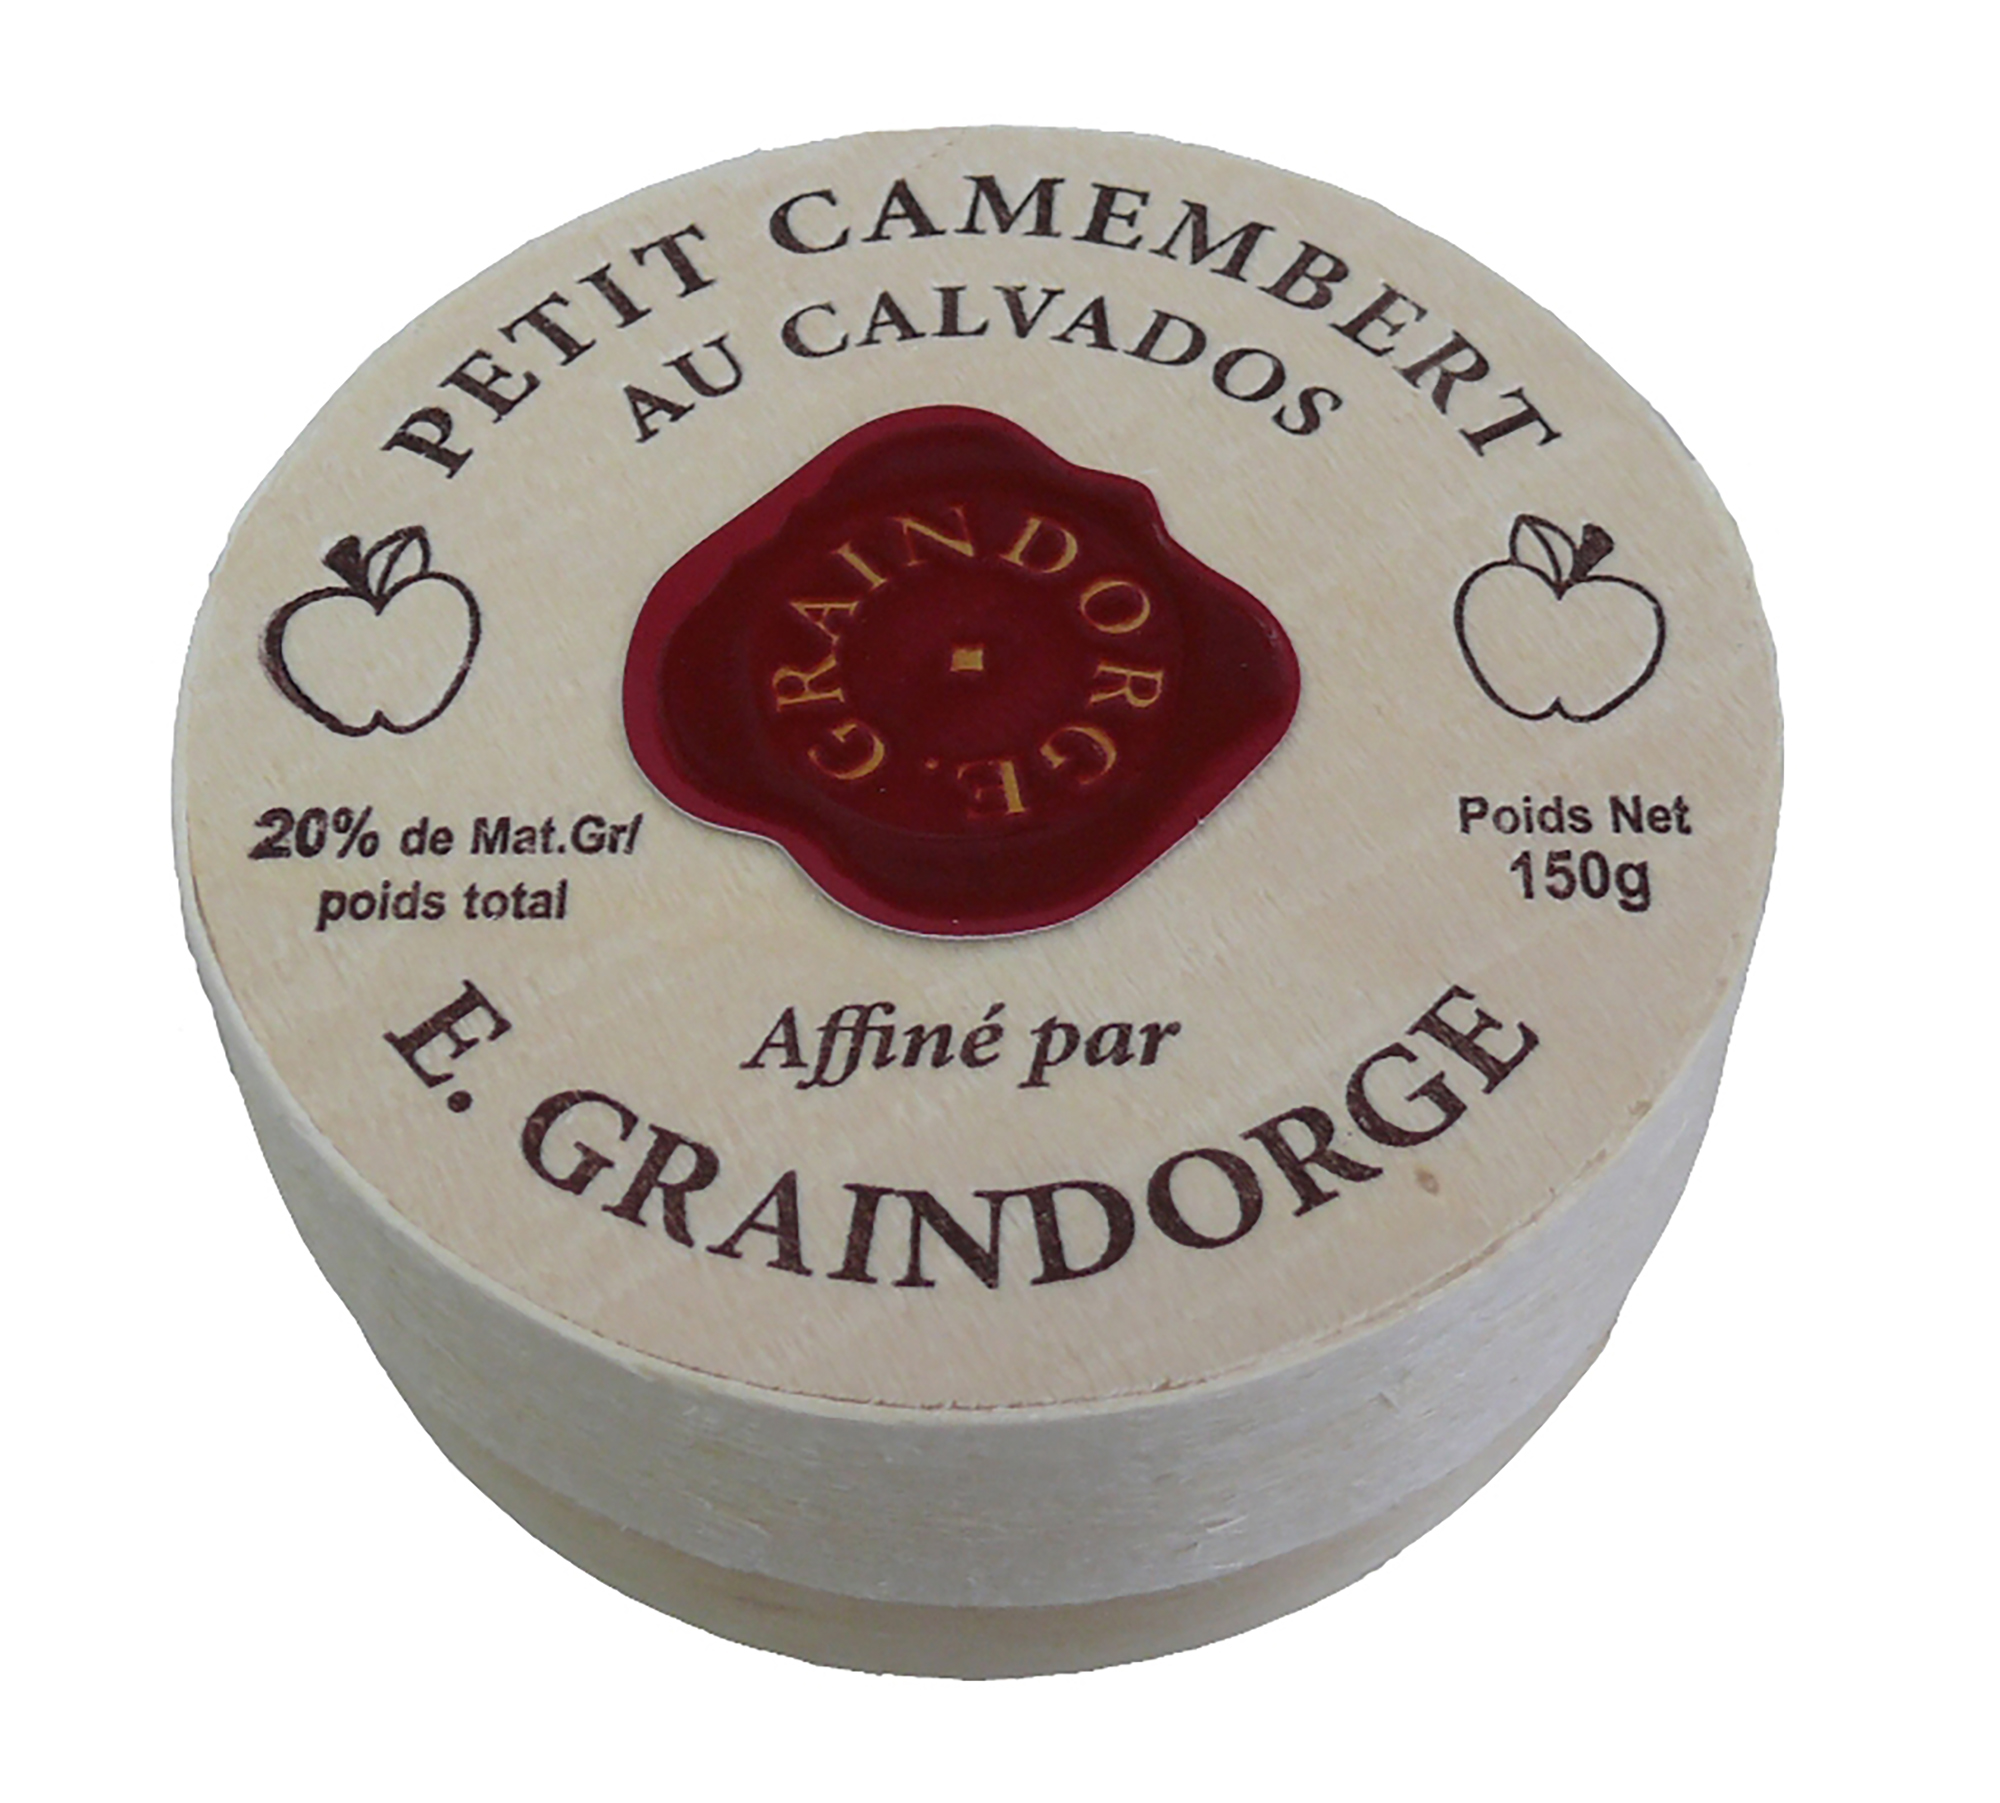 Graindorge Petit Camembert Calvados 150 g